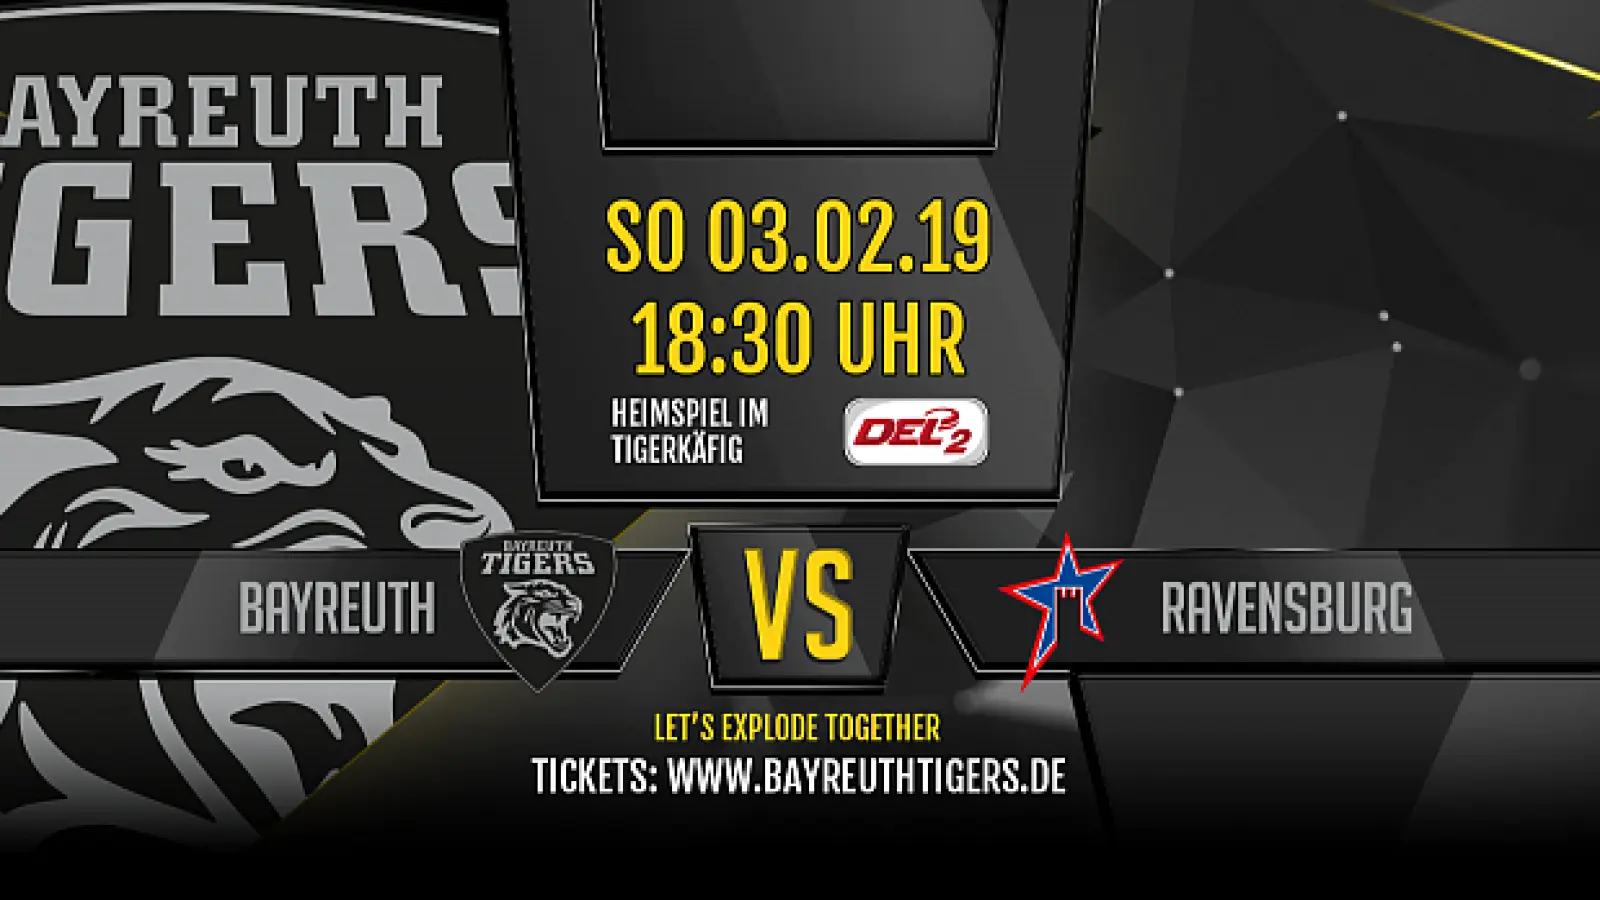 Die Bayreuth Tigers treffen auf Ravensburg. / Foto: Bayreuth Tigers Eishockey GmbH. (Foto: inBayreuth.de)